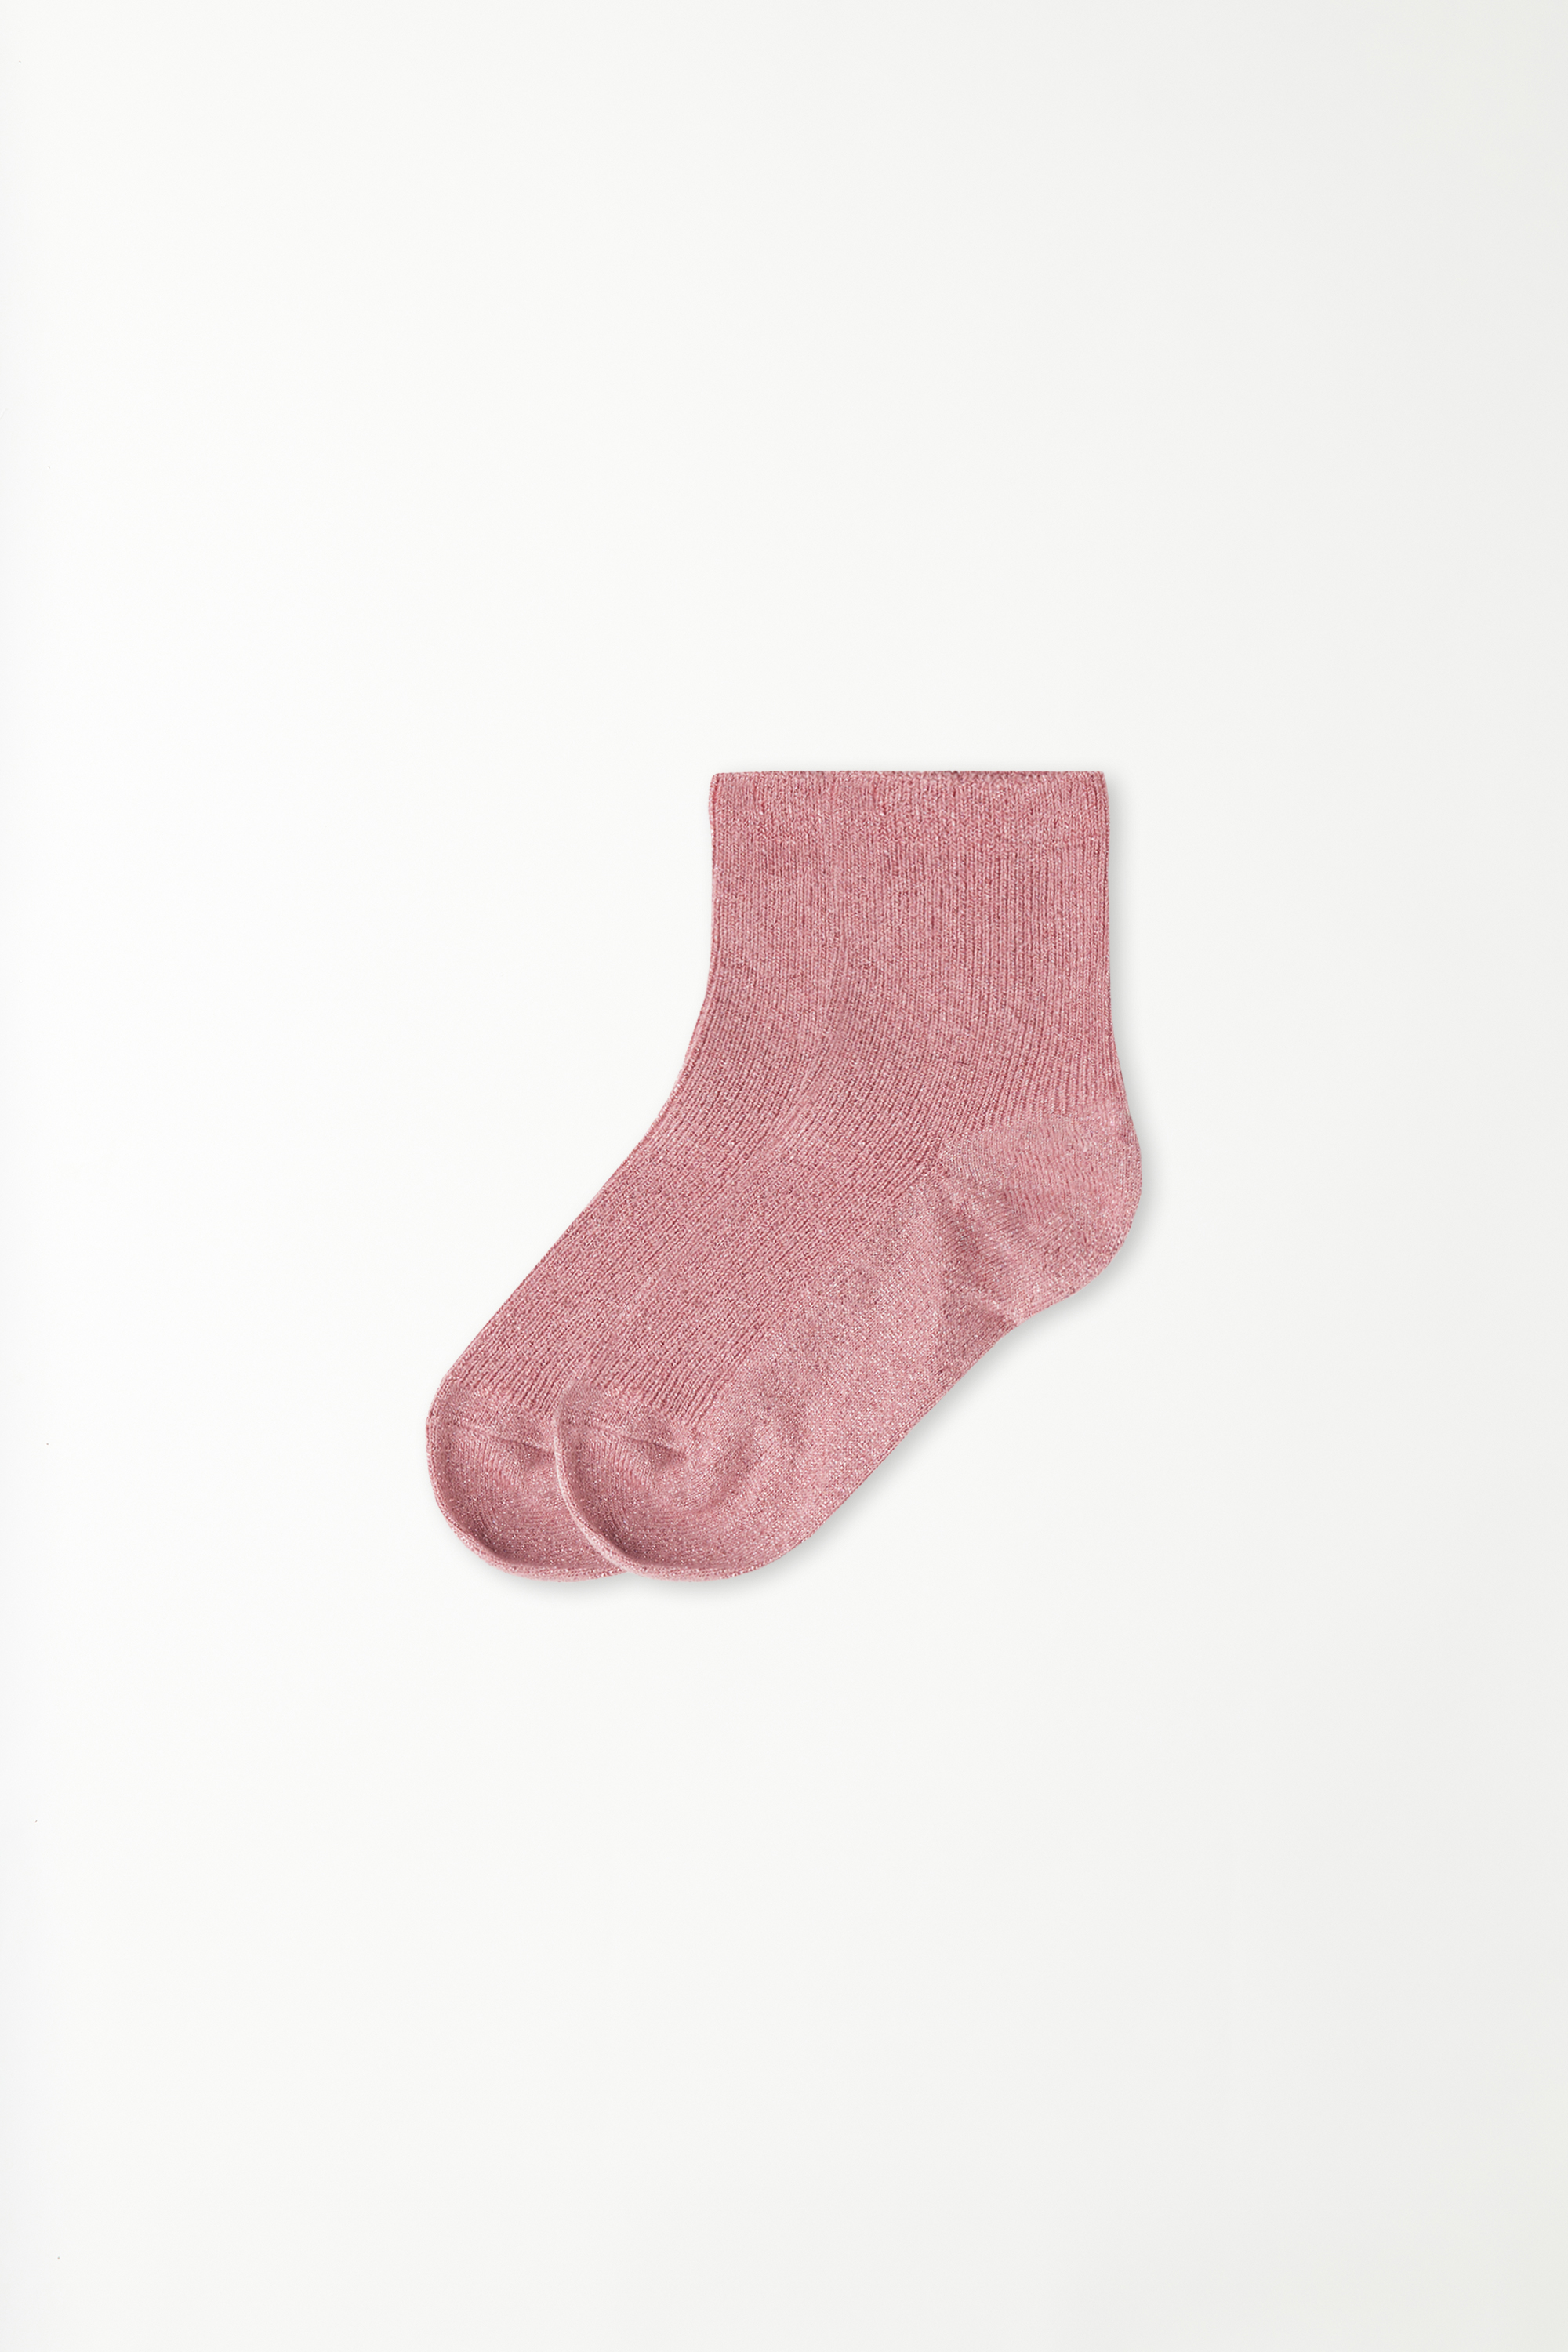 Girls’ 3/4 Laminated Ribbed Socks